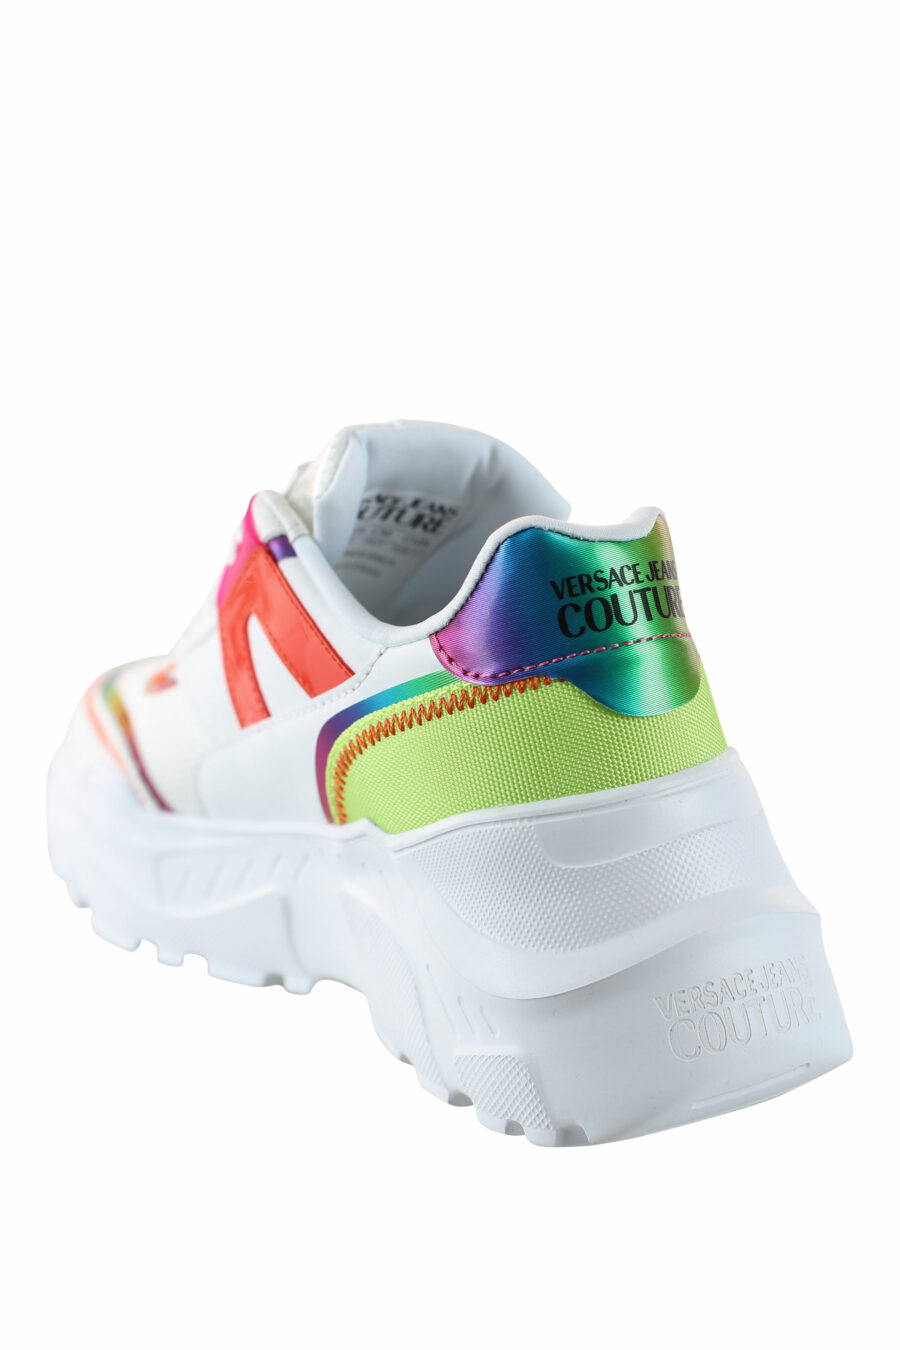 Zapatillas blancas multicolor reflectivo - IMG 4494